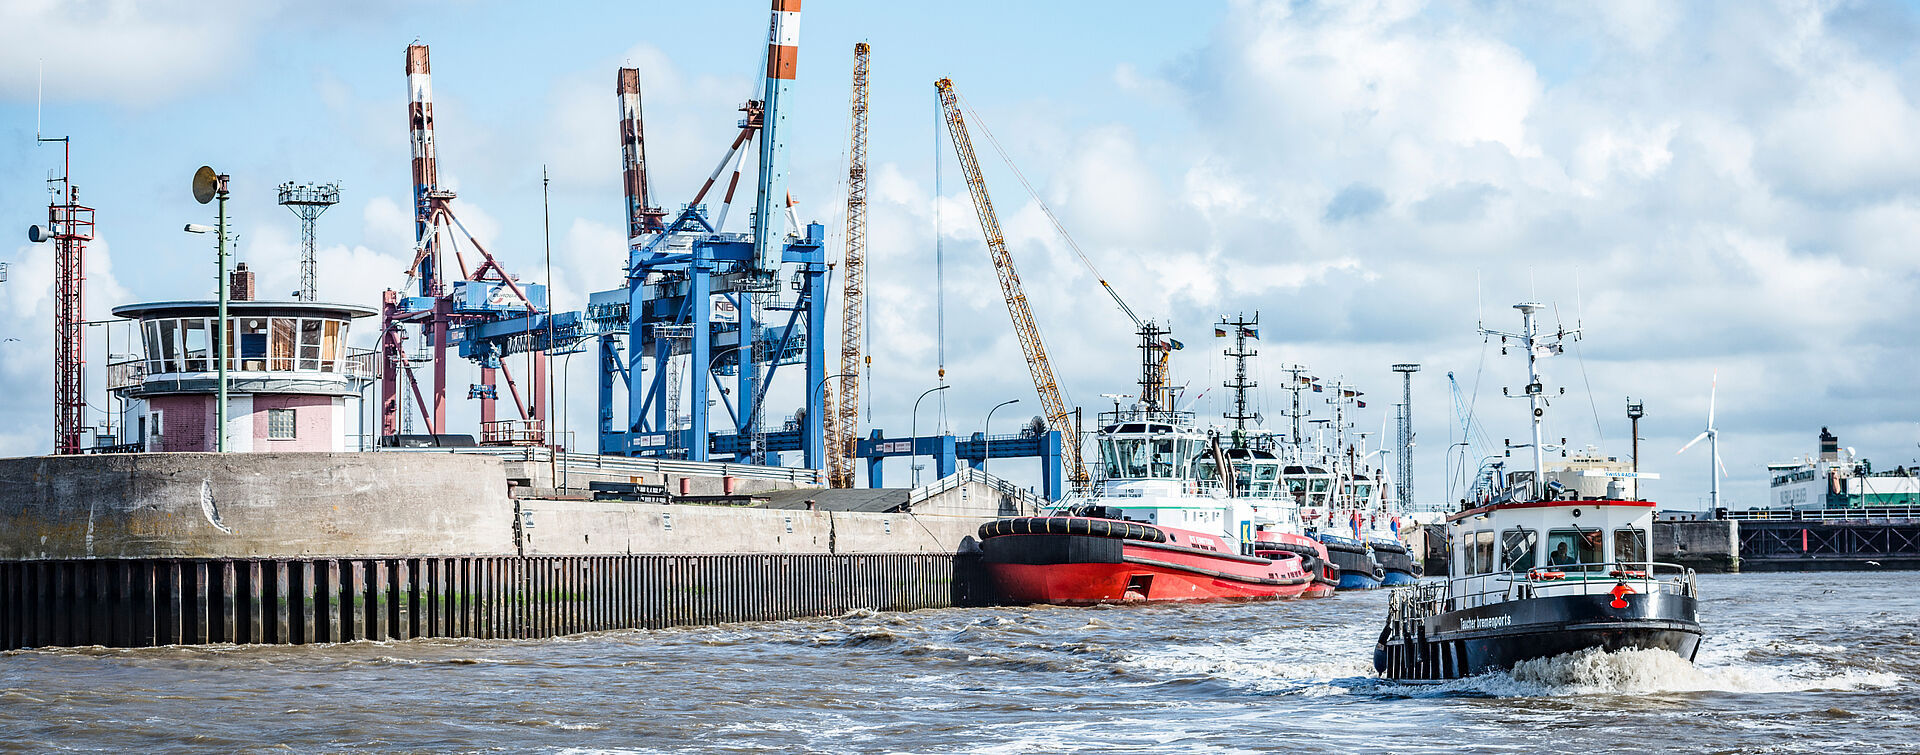 Das Boot der Taucher von bremenports im Hafenbecken in Fahrt